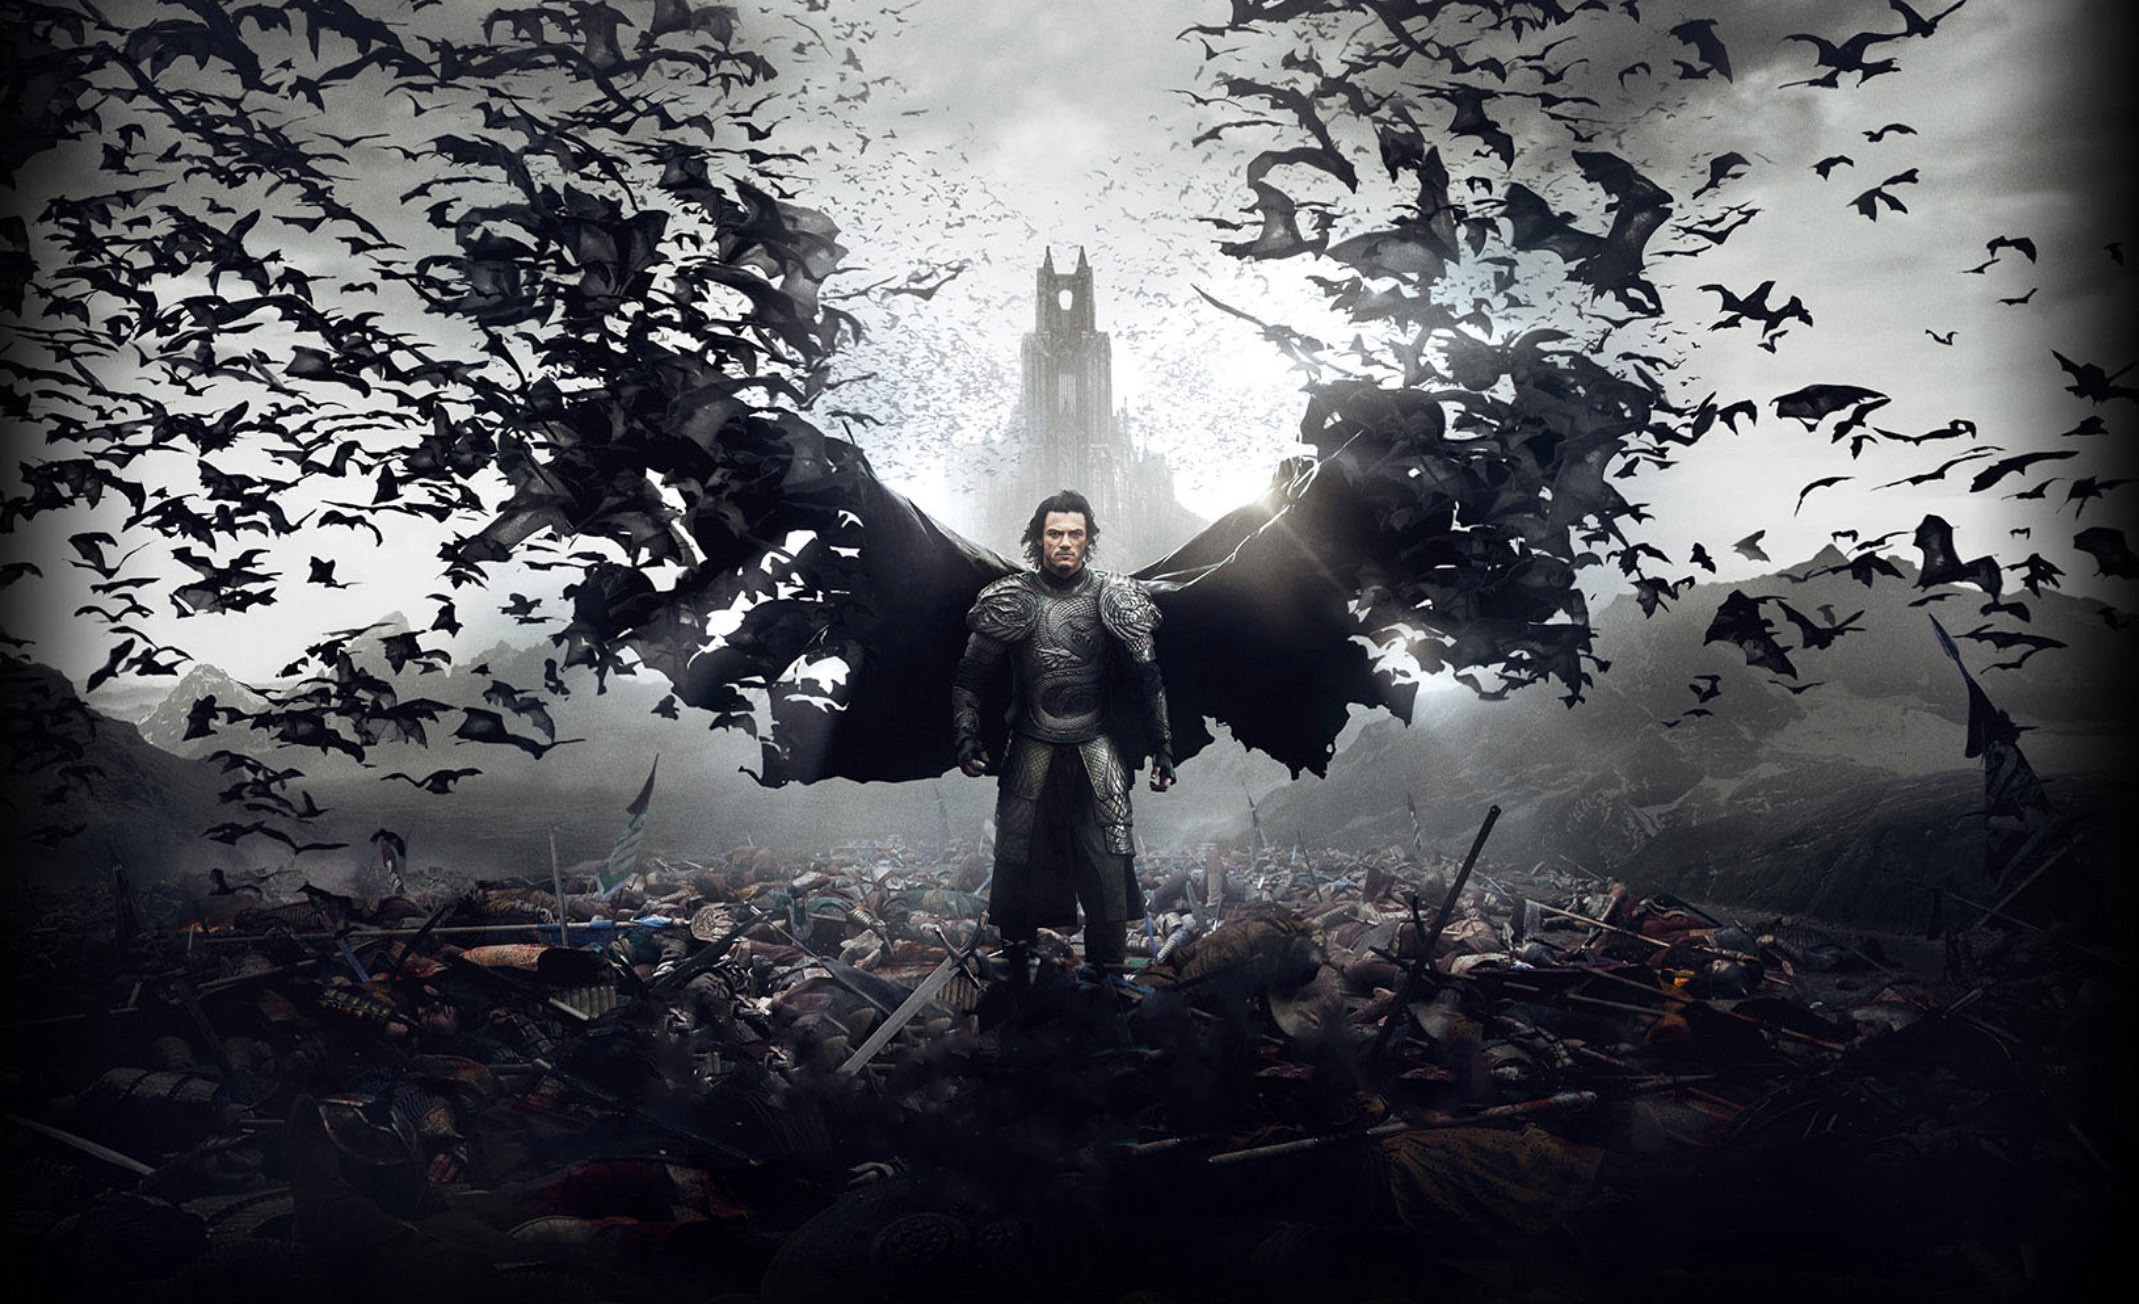 General 2139x1304 Dracula Dracula Untold movies vampires horror bats digital art 2014 (Year)